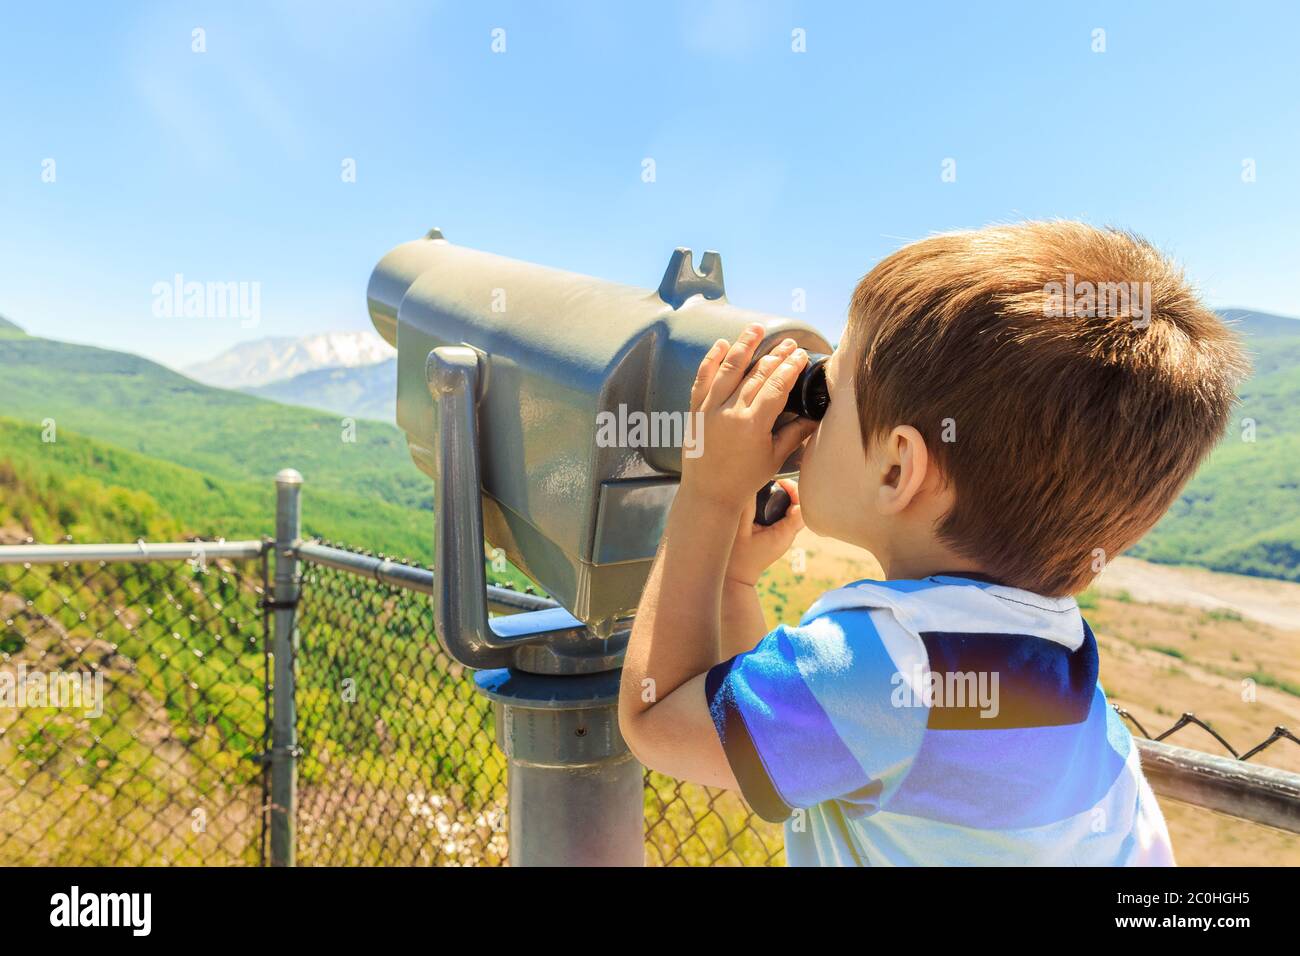 Kleiner Junge mit Teleskop Mount St. Helens Peak vom Aussichtspunkt, Washington State, USA zu sehen Stockfoto